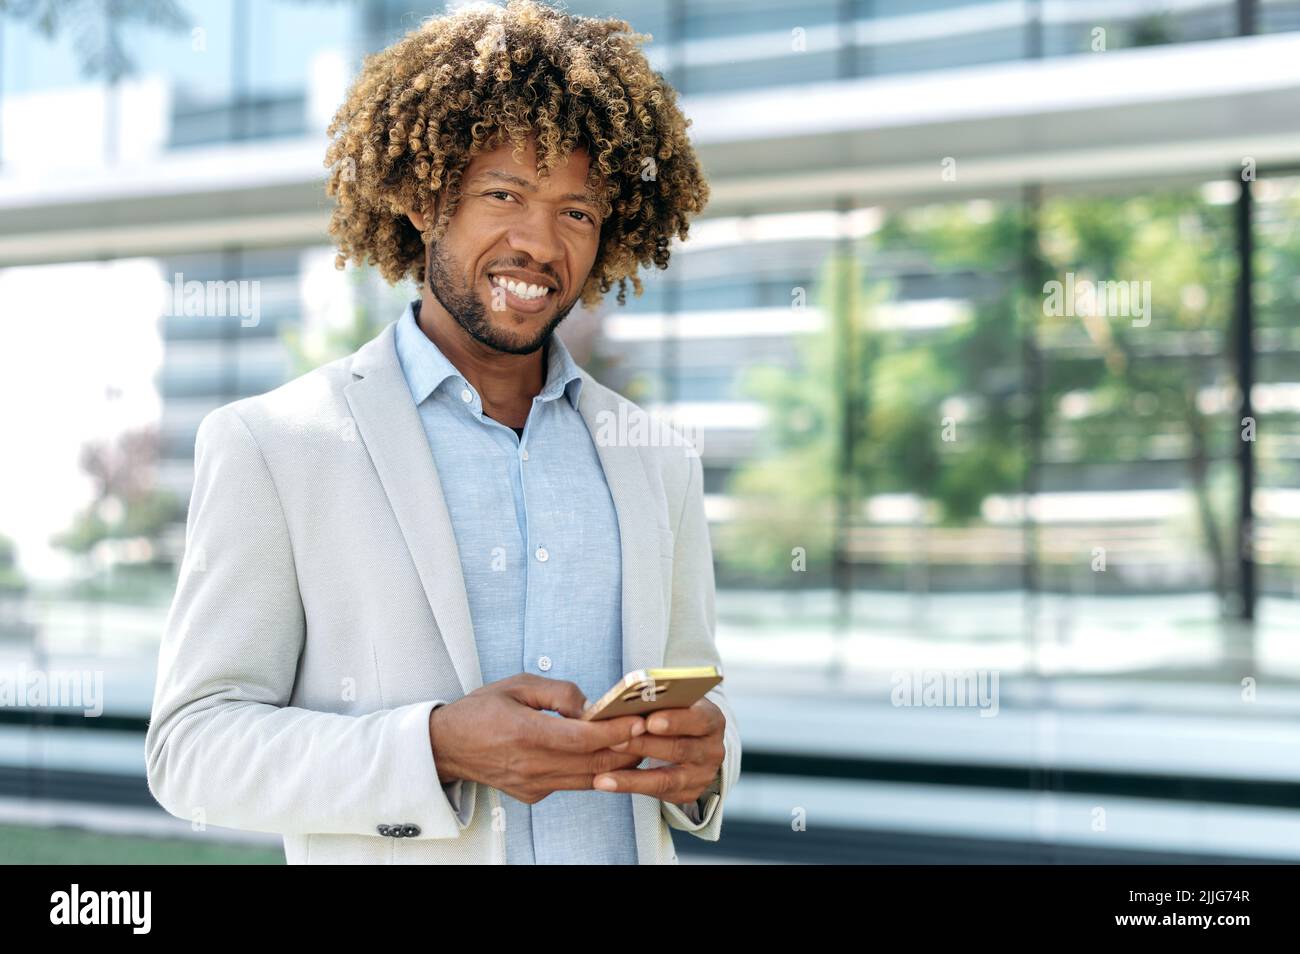 Erfolgreicher, selbstbewusster, eleganter brasilianischer lockiger Mann, der stilvolle formelle Kleidung trägt, steht im Freien in der Nähe des Geschäftszentrums, nutzt sein Smartphone, blickt auf die Kamera und lächelt. Gadget, drahtlose Technologie Stockfoto